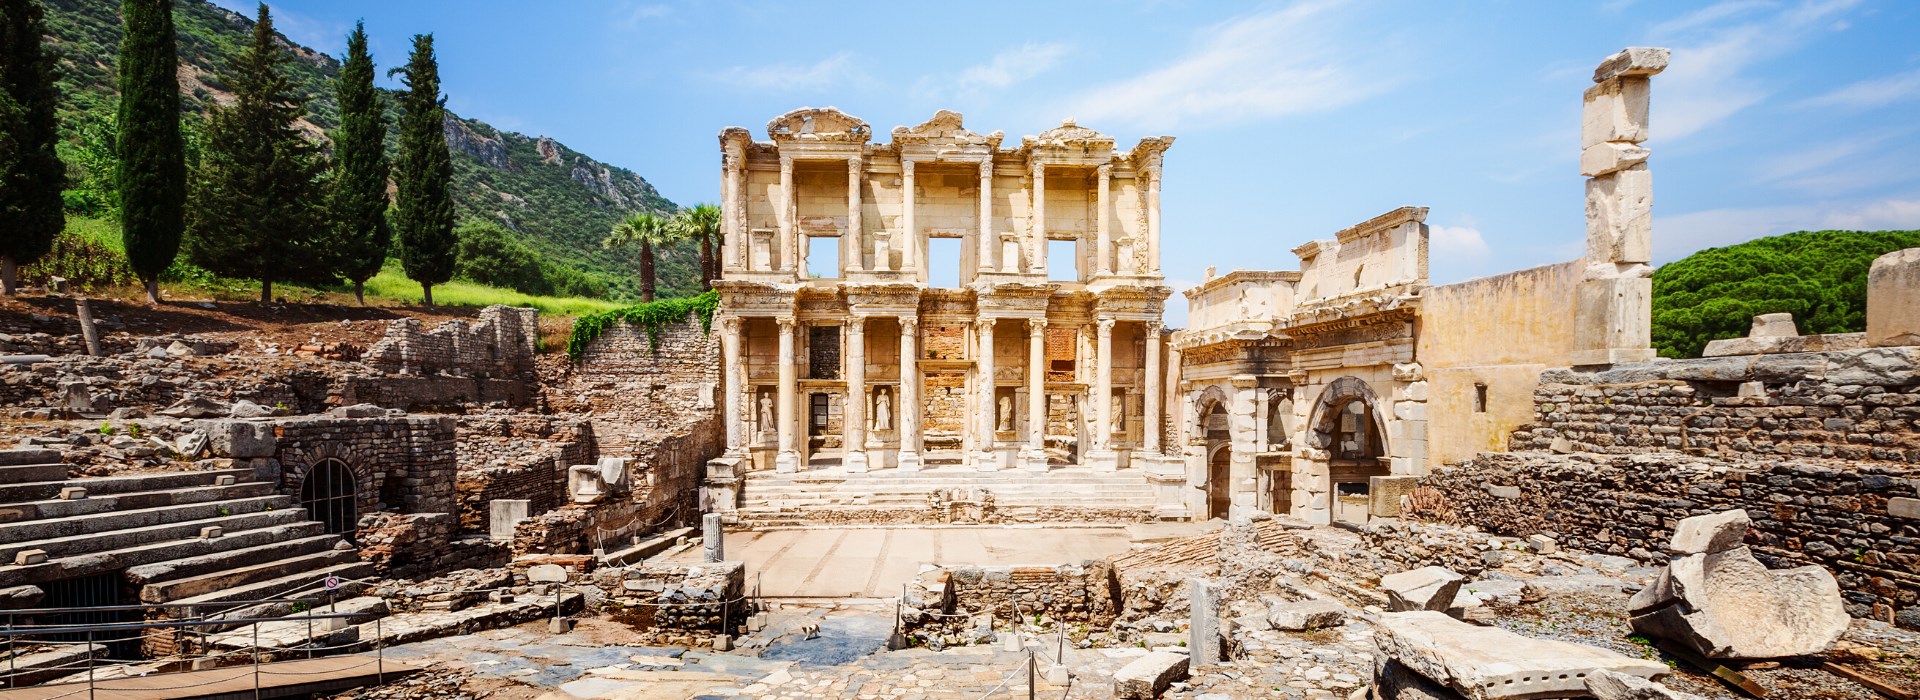 Visiter Ephese - Turquie